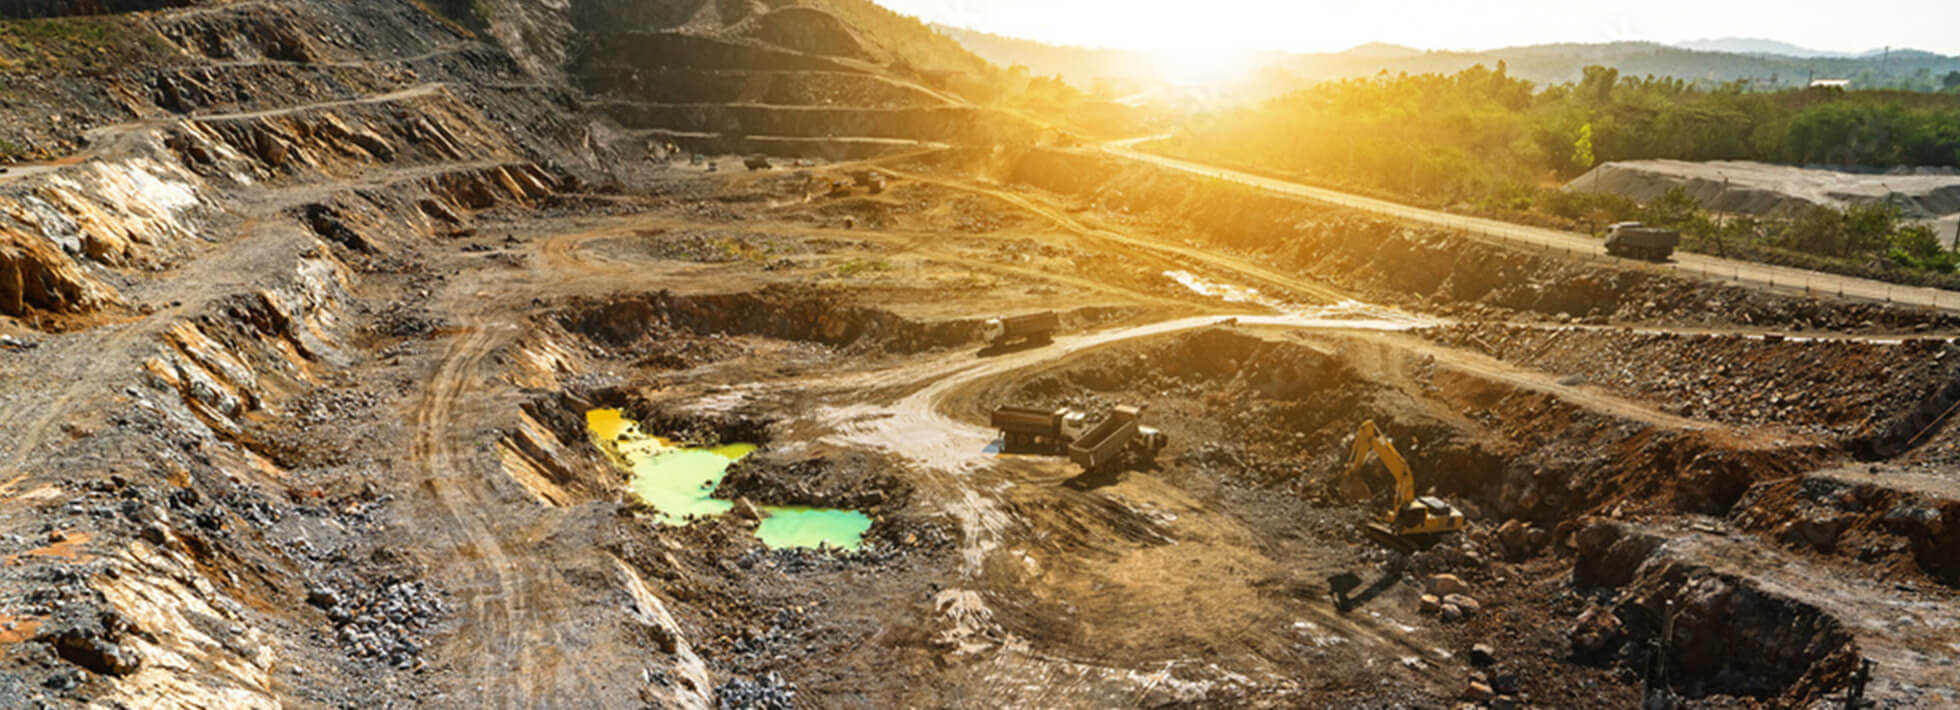 天然金鉱山における環境汚染